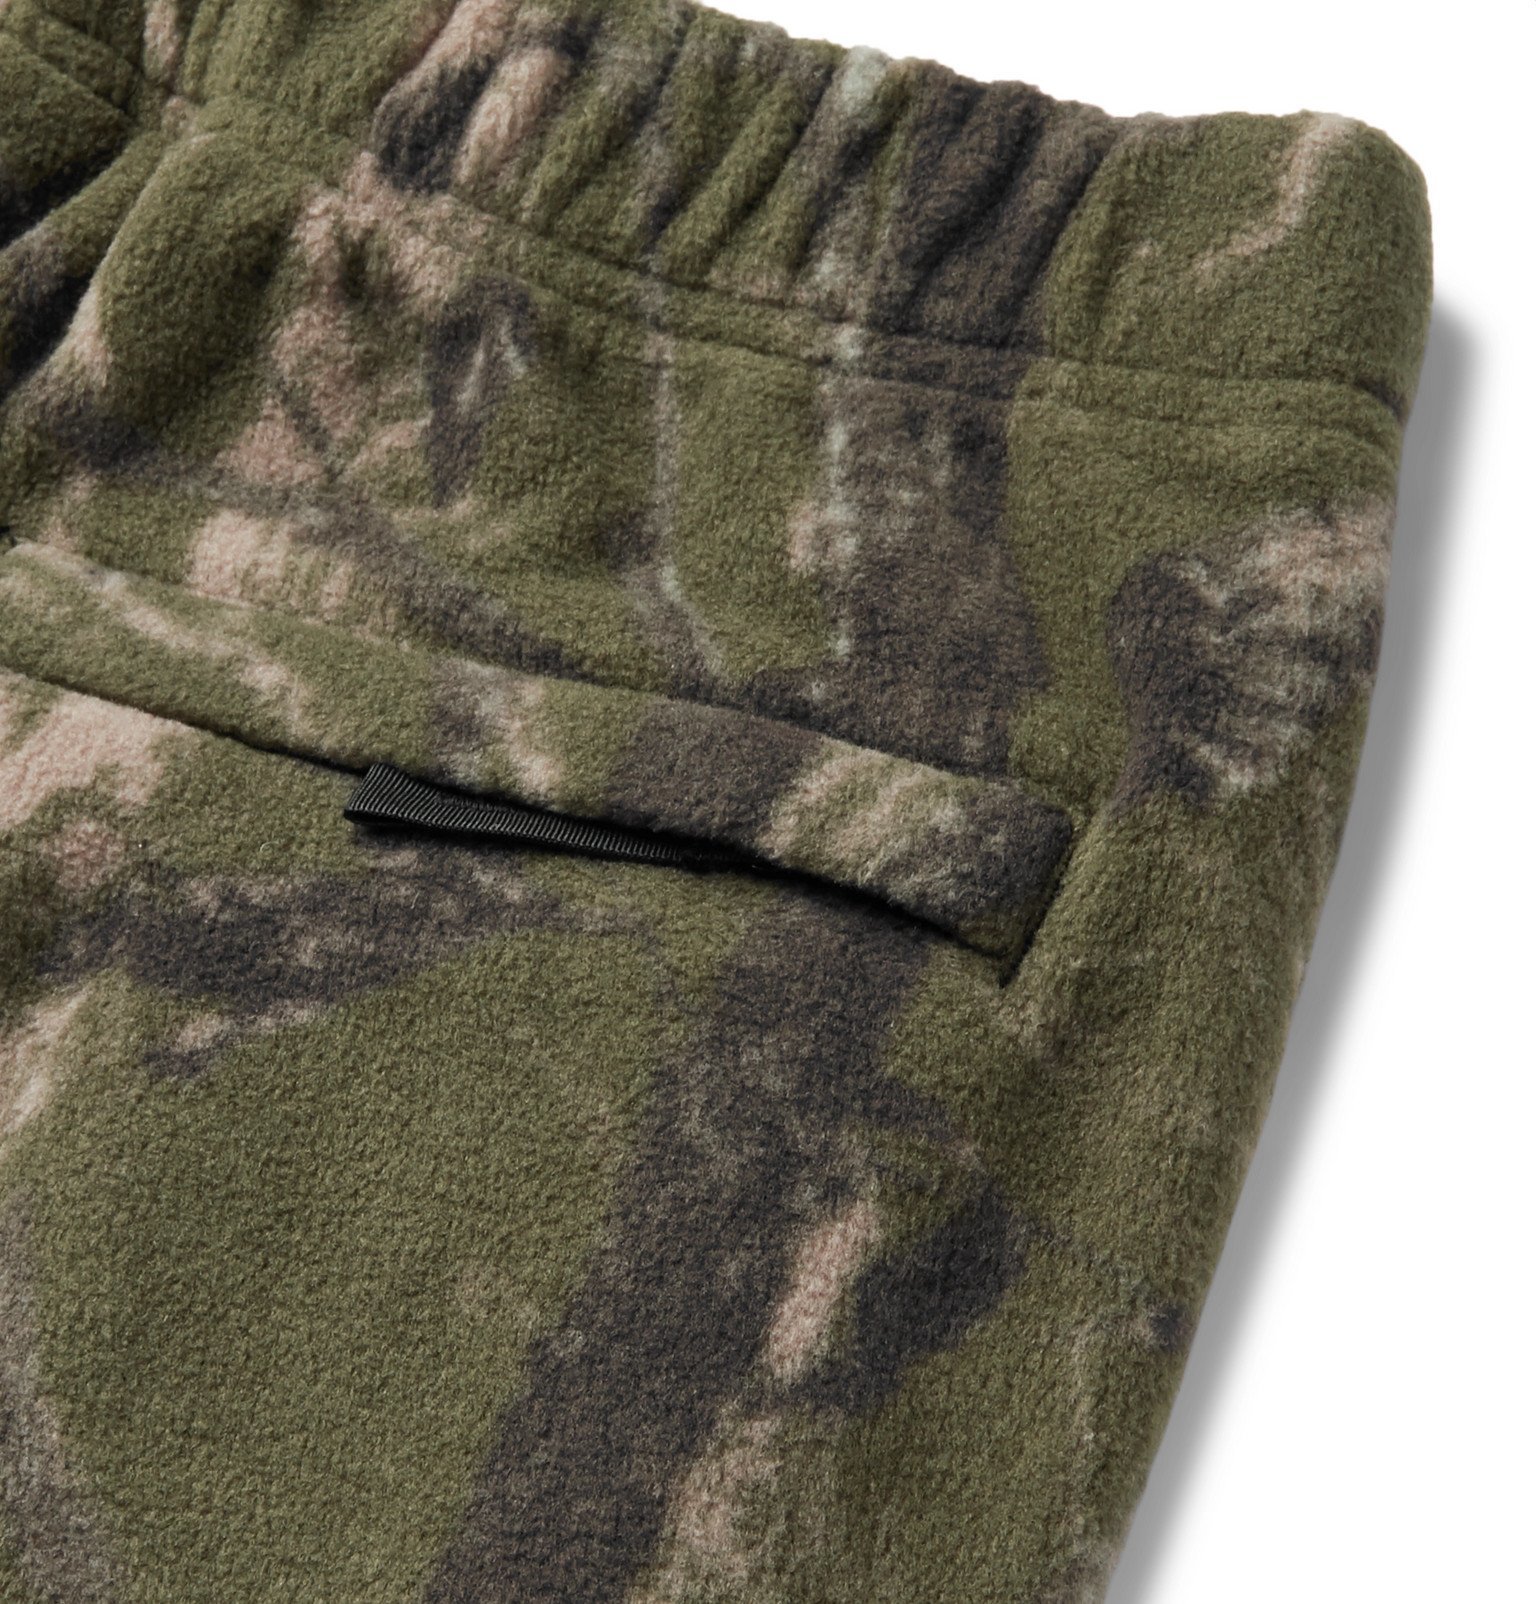 Carhartt WIP - Beaufort Camouflage-Print Fleece Sweatpants - Green ...